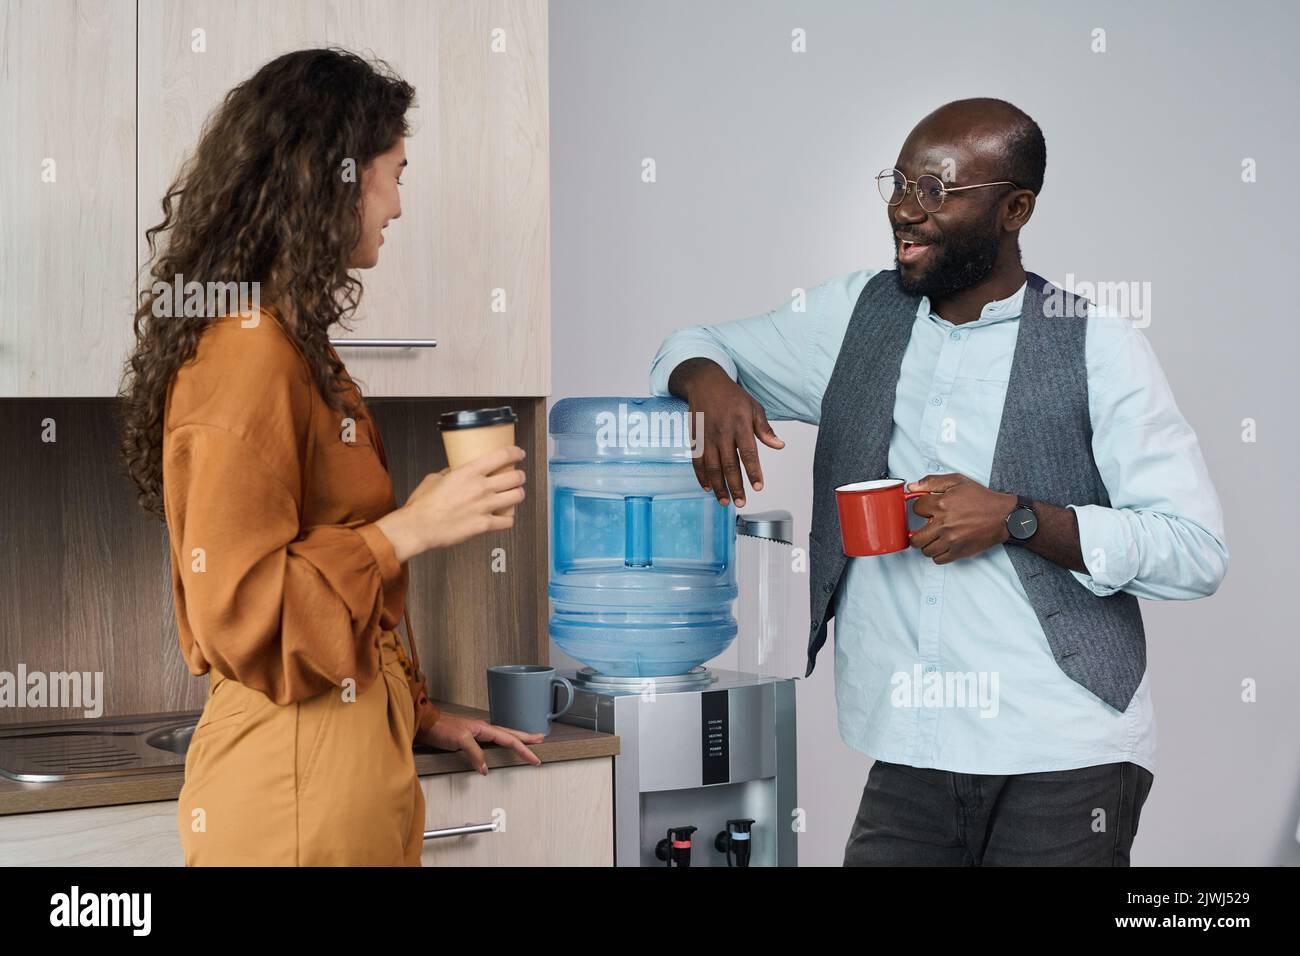 Glückliche junge interkulturelle Büroangestellte unterhalten sich und trinken in der Pause Tee und Kaffee, während sie mit Gallone am Wasserspender stehen Stockfoto